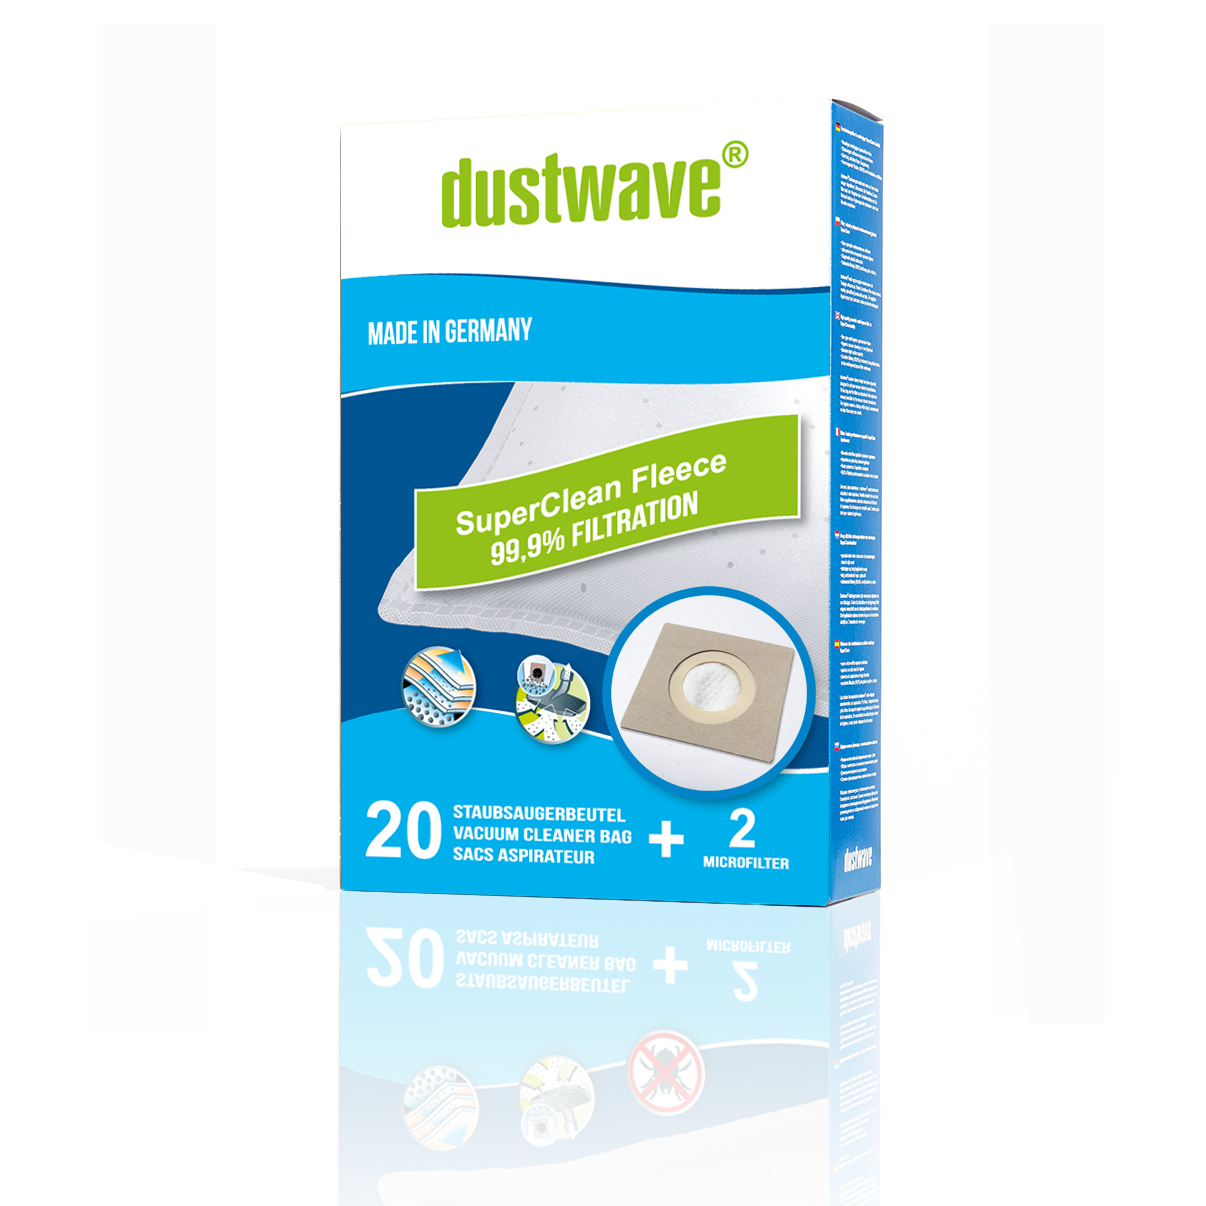 Dustwave® Premium 20 Staubsaugerbeutel für Hoover TX51PAR 011 Telios Extra - hocheffizient, mehrlagiges Mikrovlies mit Hygieneverschluss - Made in Germany